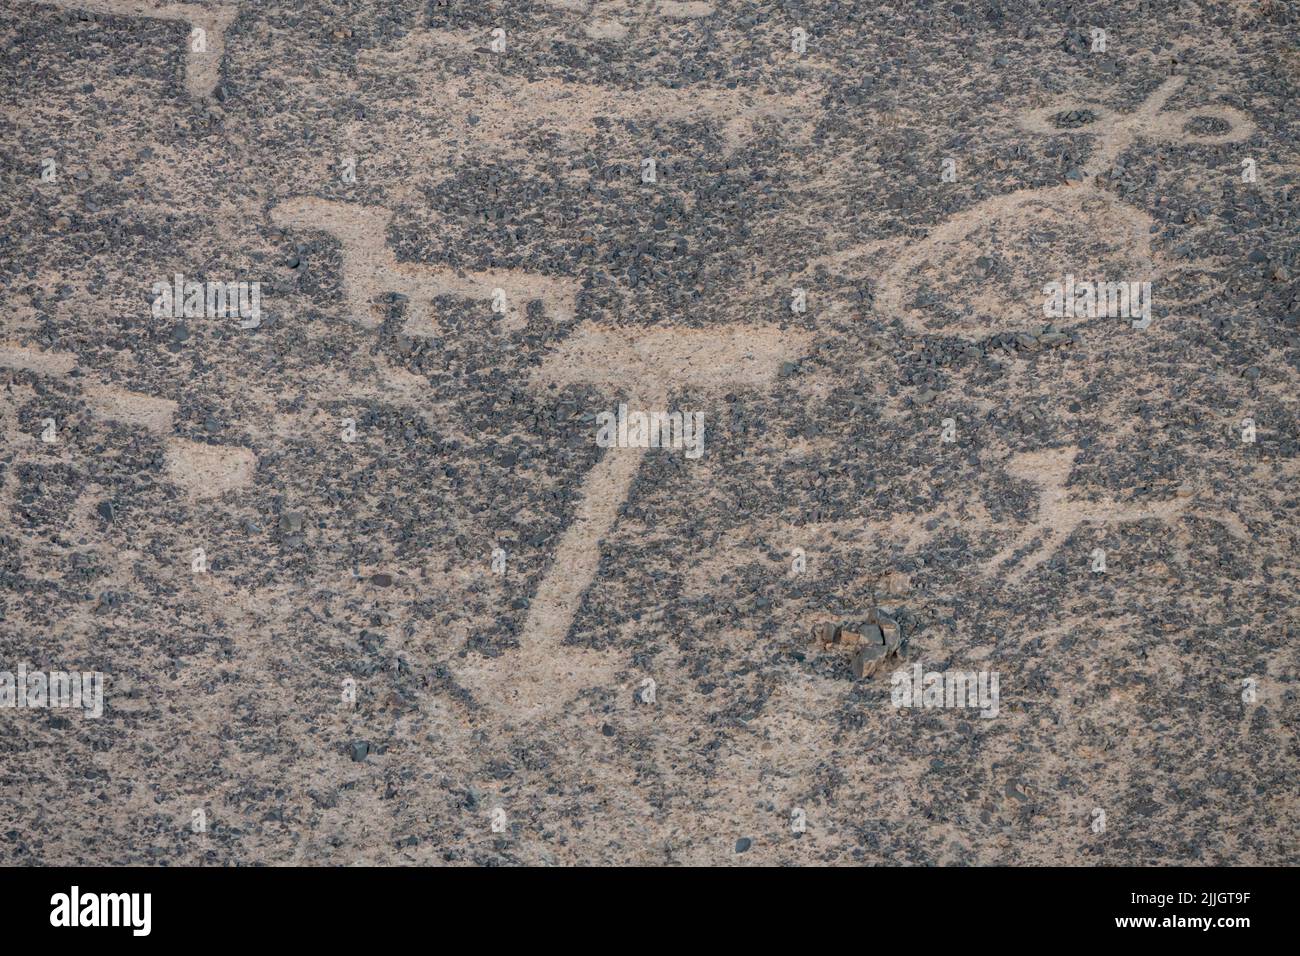 Die Cerros Pintados-Geoglyphen wurden zwischen 700 und 1500 n. Chr. in der Atacama-Wüste im Norden Chiles erstellt. Sie zeigen stilisierte Figuren von Menschen, Ani Stockfoto